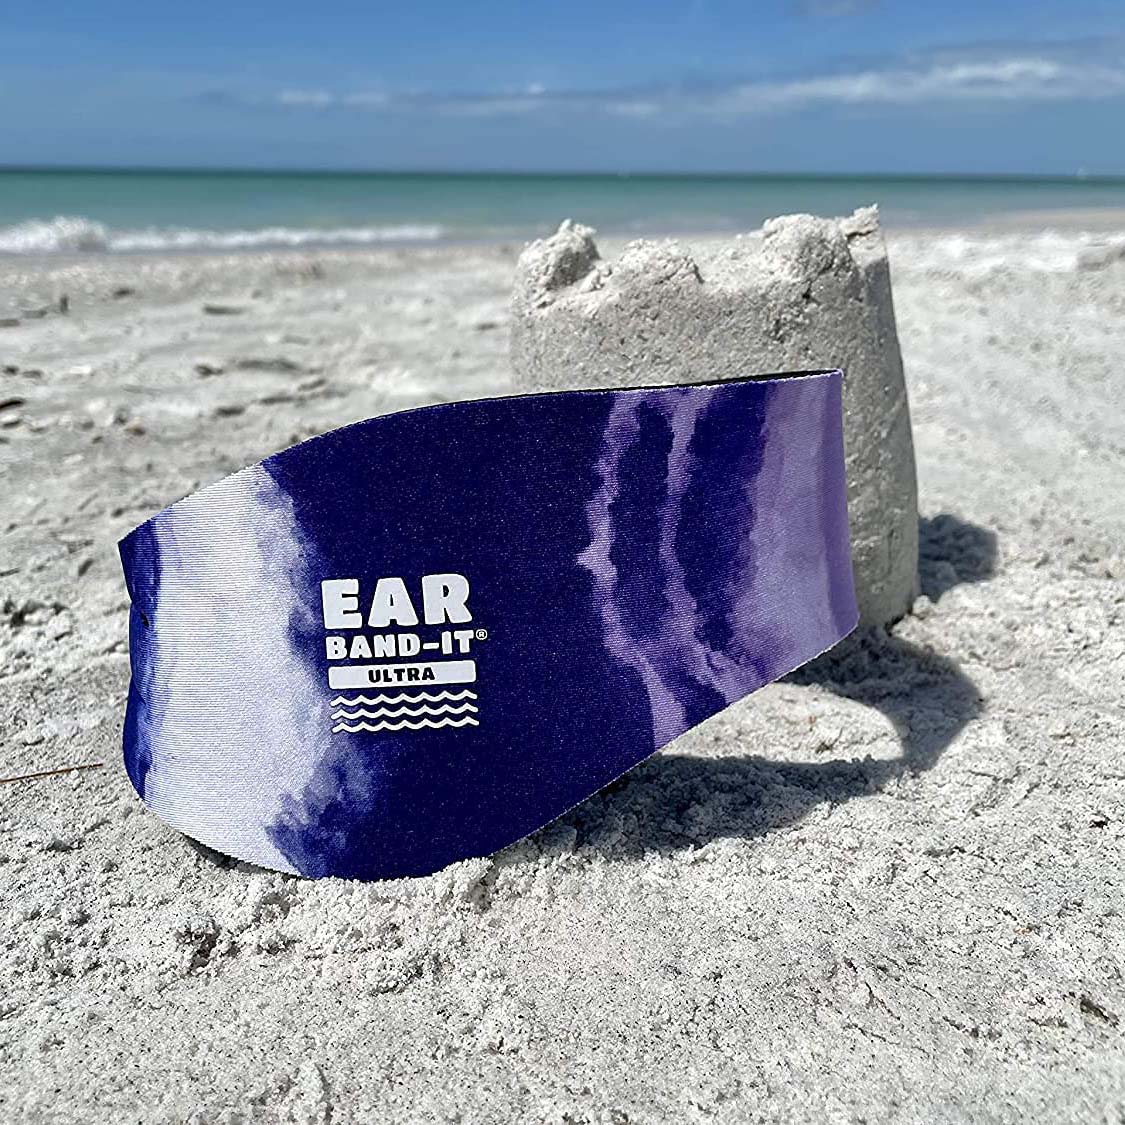 Ear Band-It Ultra Swimmer's Headband - Tie Dye Purple